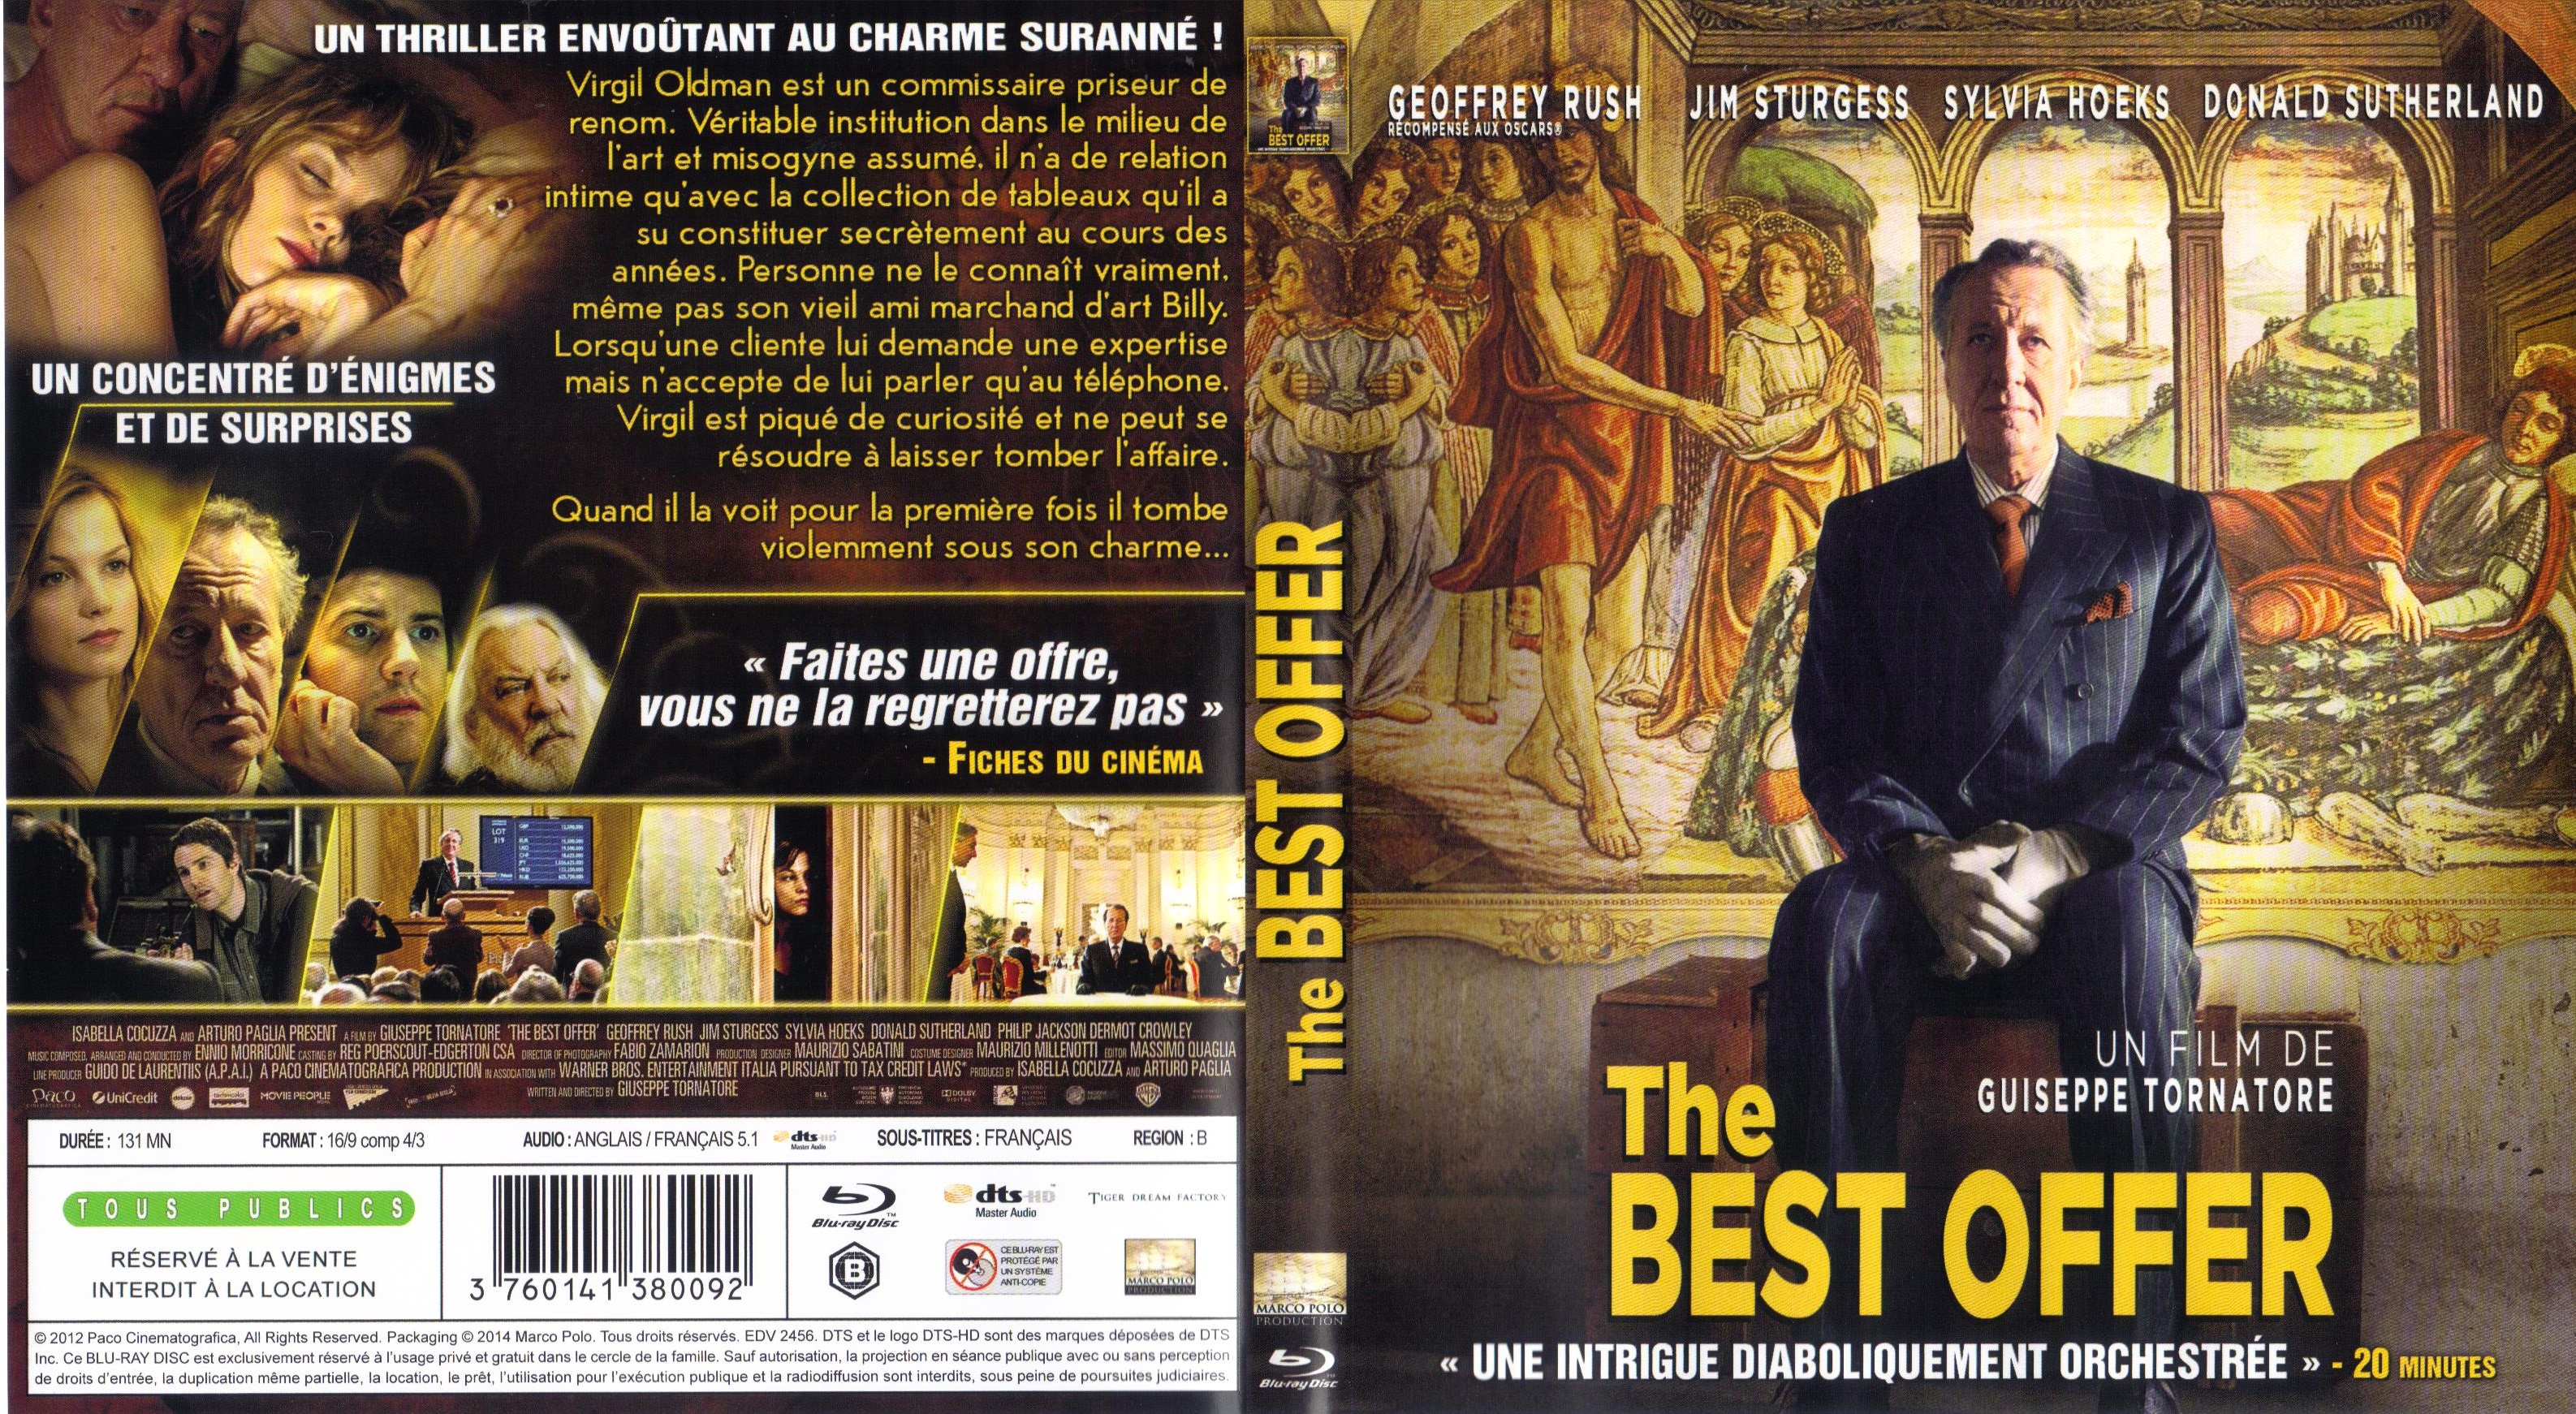 Jaquette Dvd De The Best Offer Blu Ray Cinéma Passion